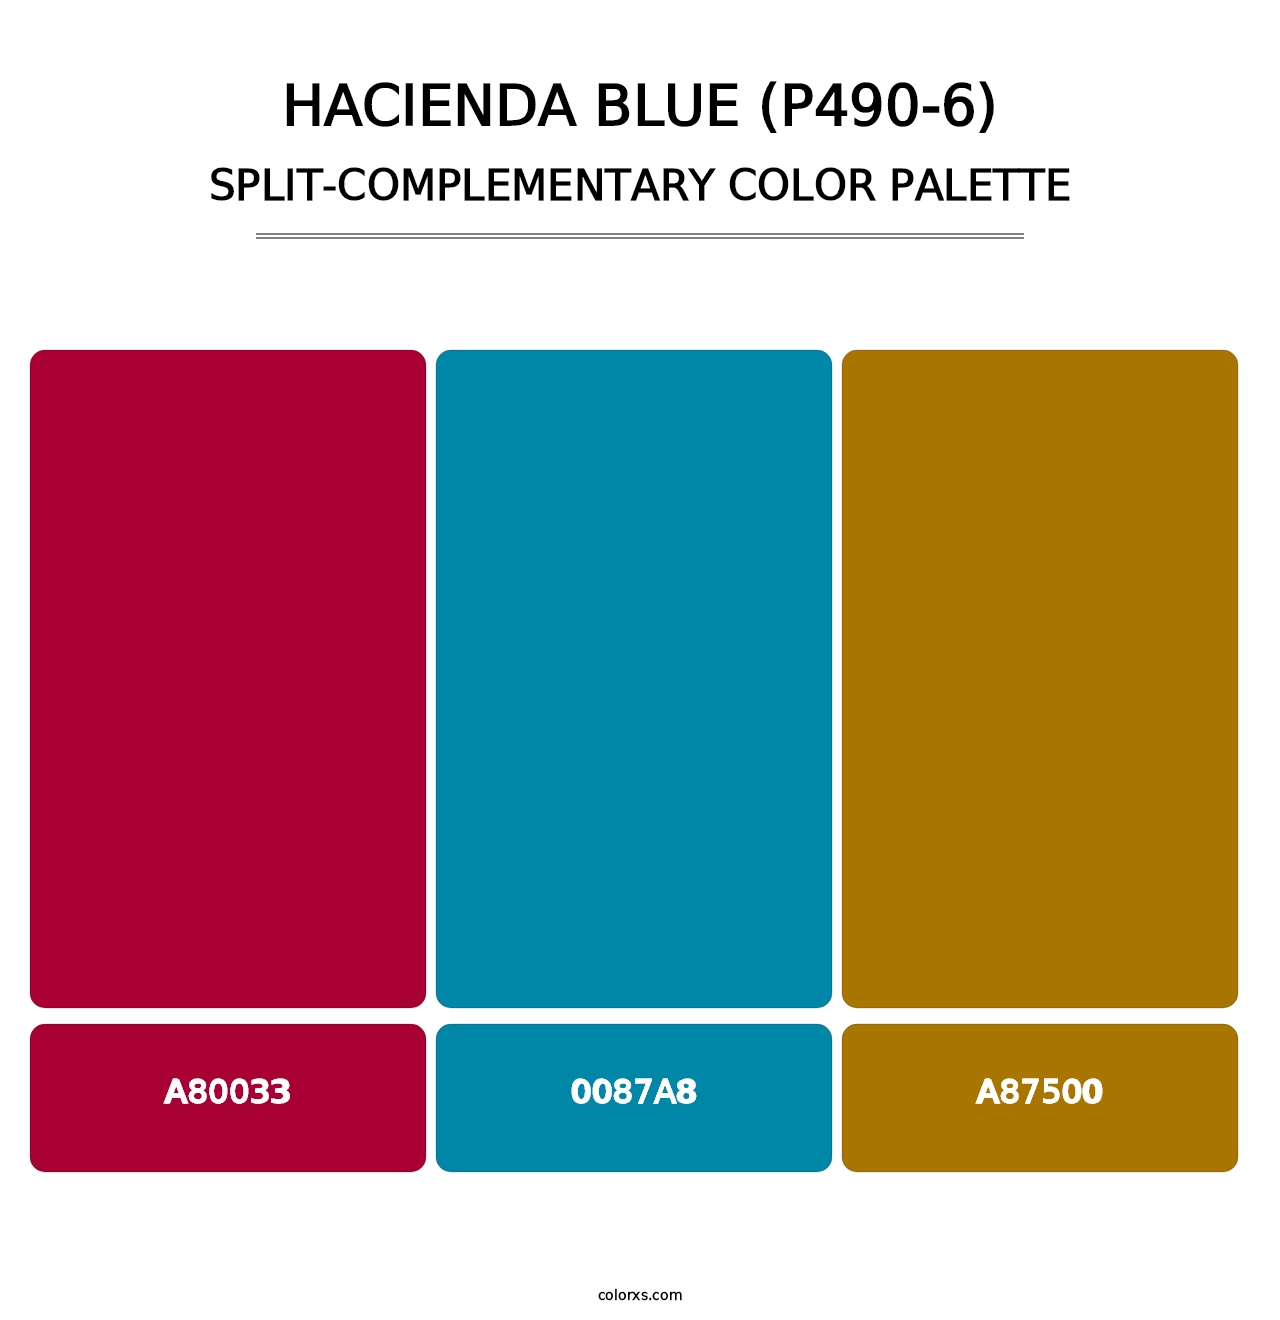 Hacienda Blue (P490-6) - Split-Complementary Color Palette